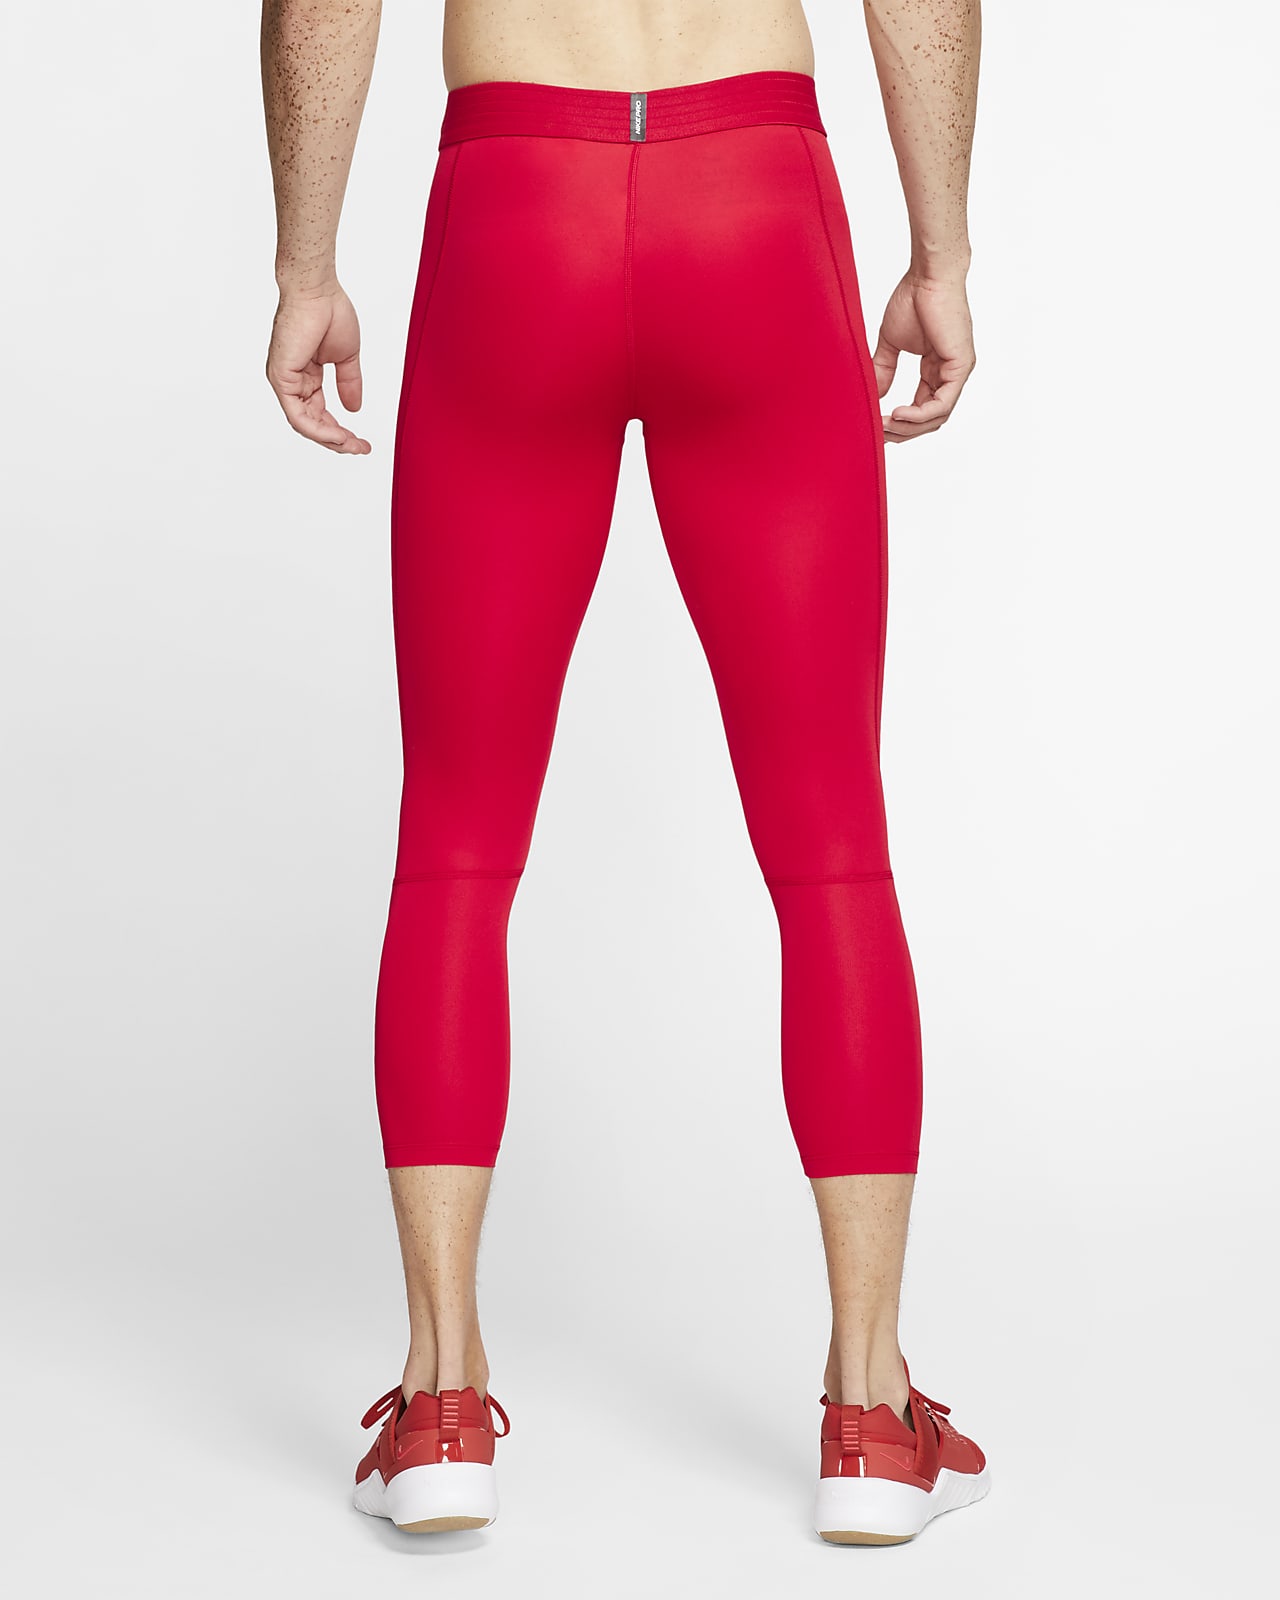 red workout leggings nike